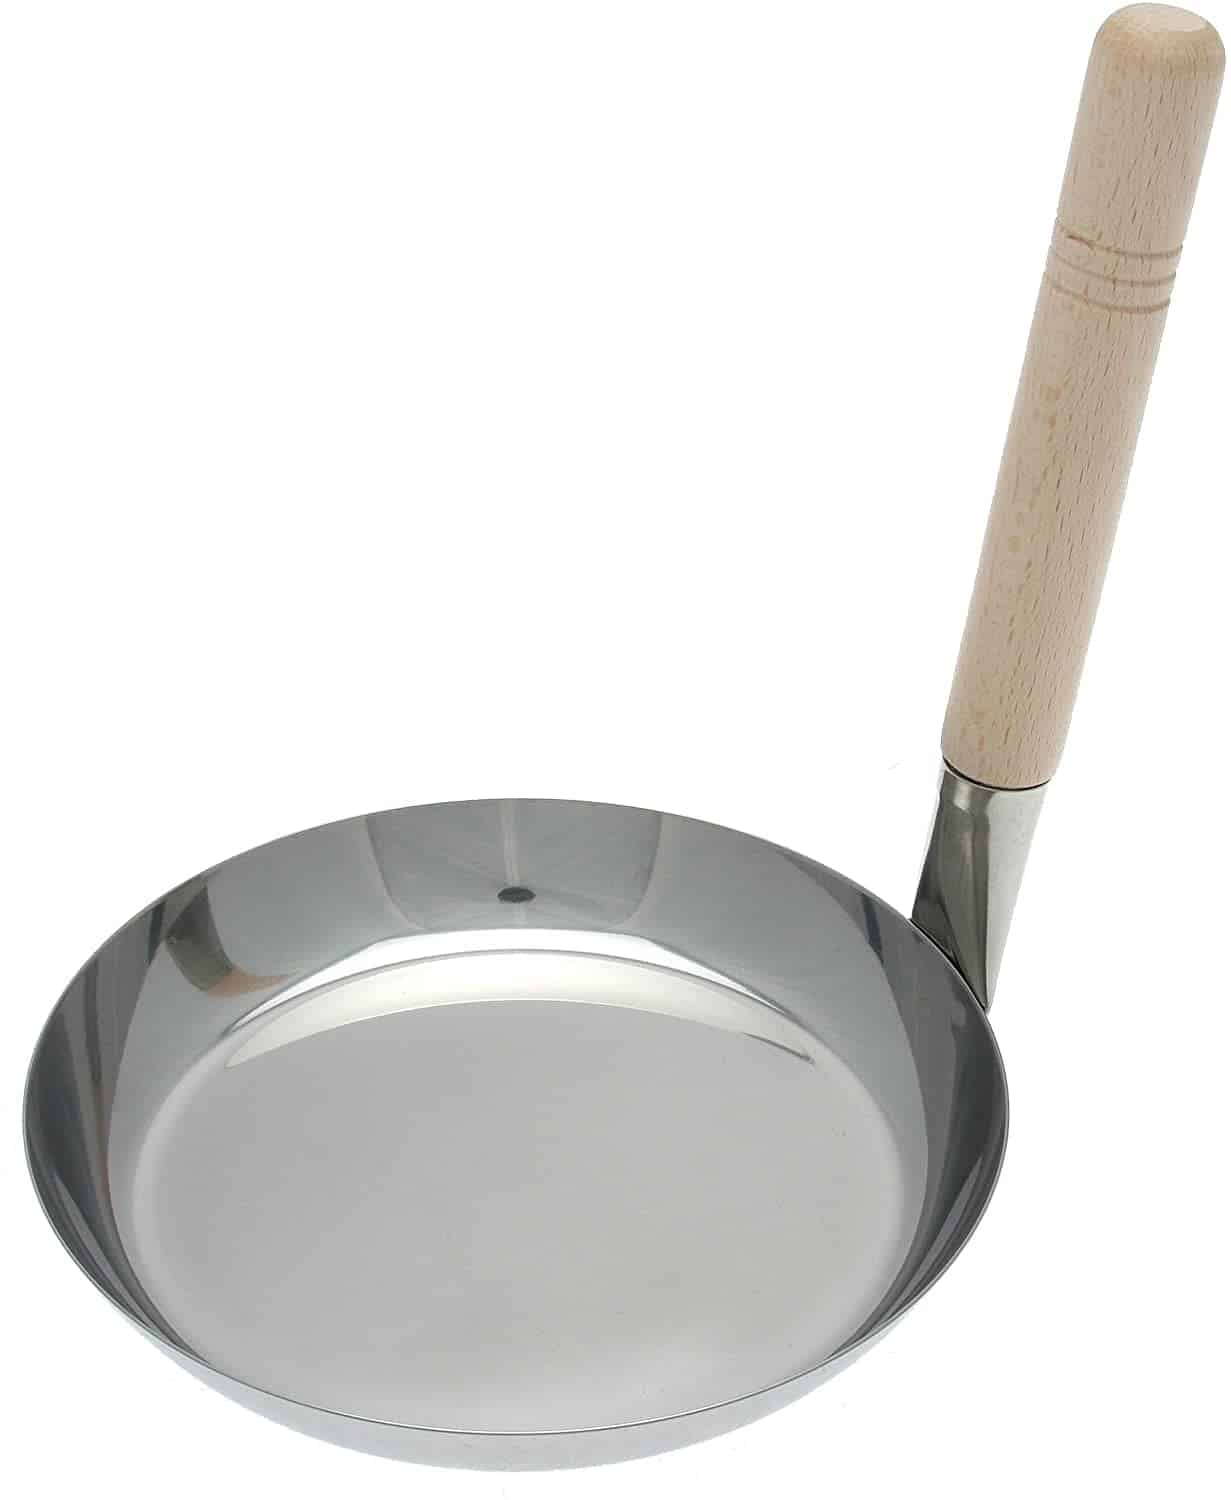 最好的不銹鋼 oyakodon katsudon 鍋 & 最適合感應 - Kotobuki 日本不銹鋼 Donburi Pan